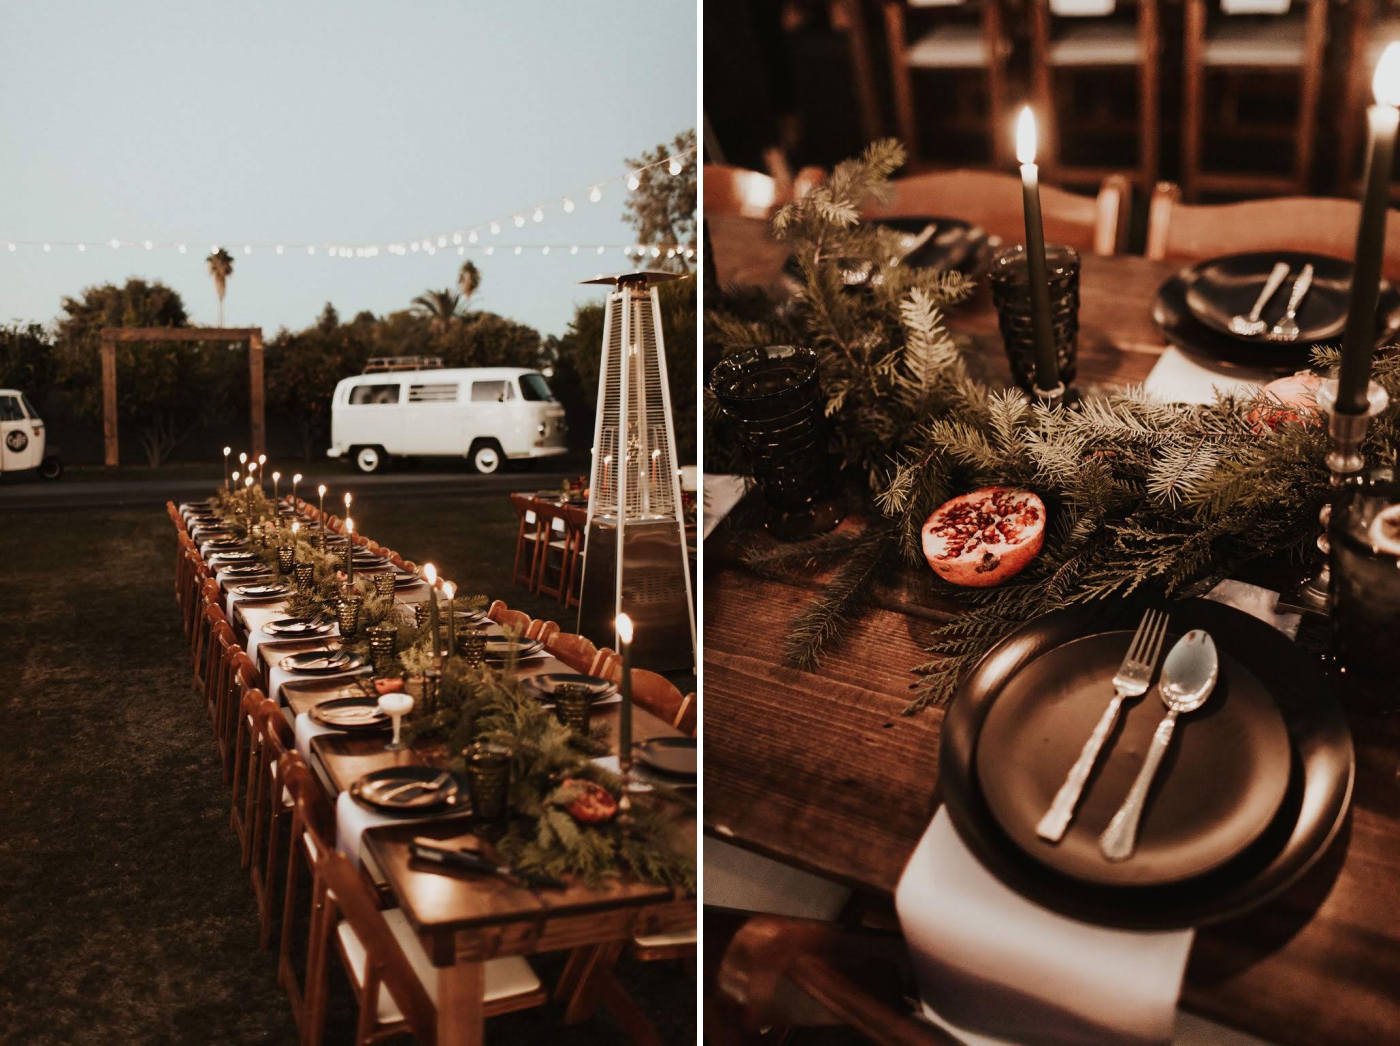 Rustic outdoor wedding venues in Arizona